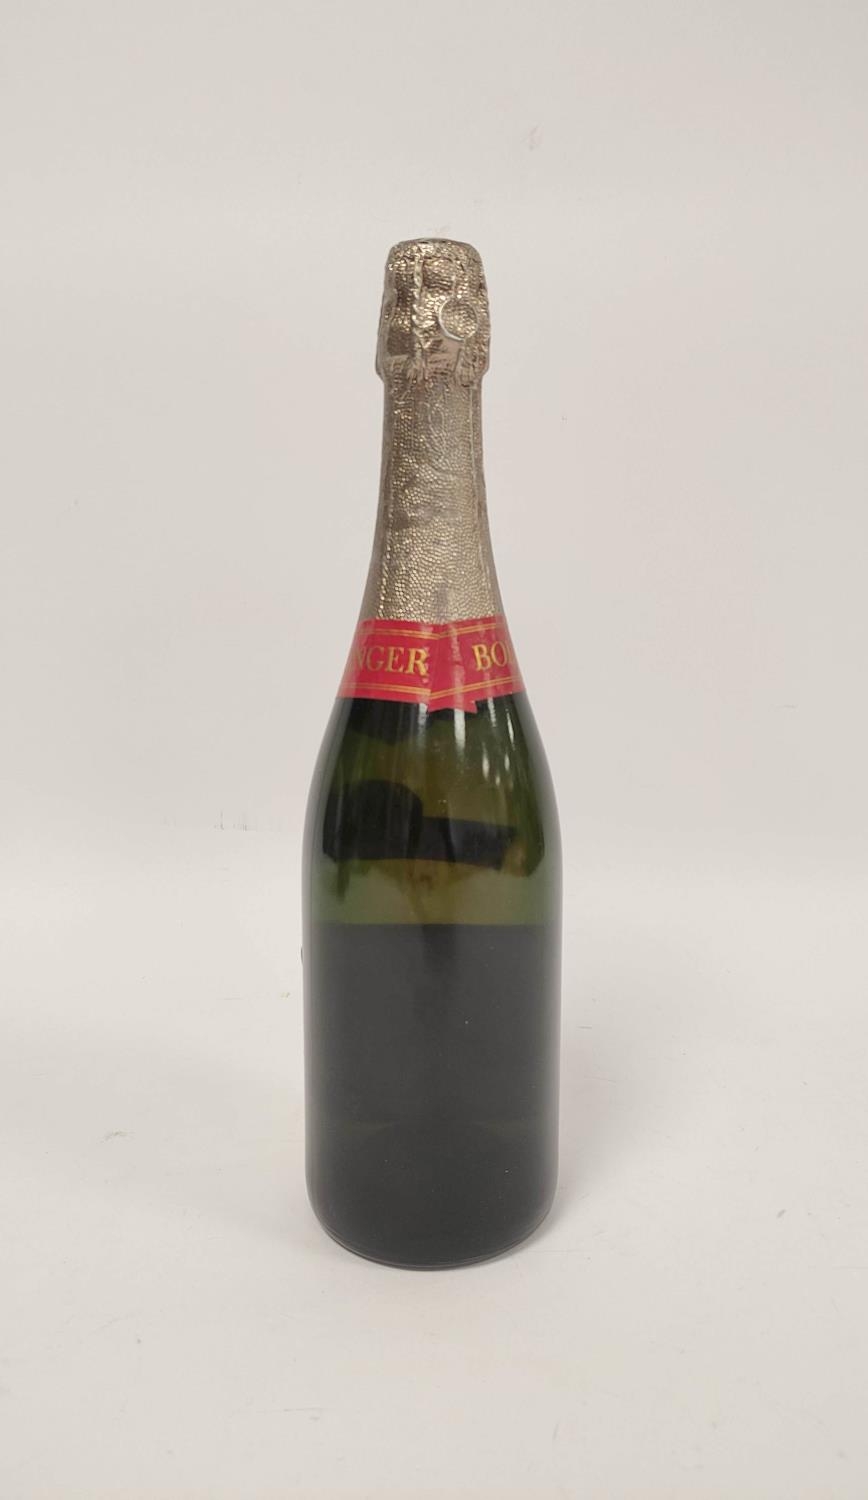 Bollinger 1976 vintage Brut champagne, 75cl. - Image 5 of 6